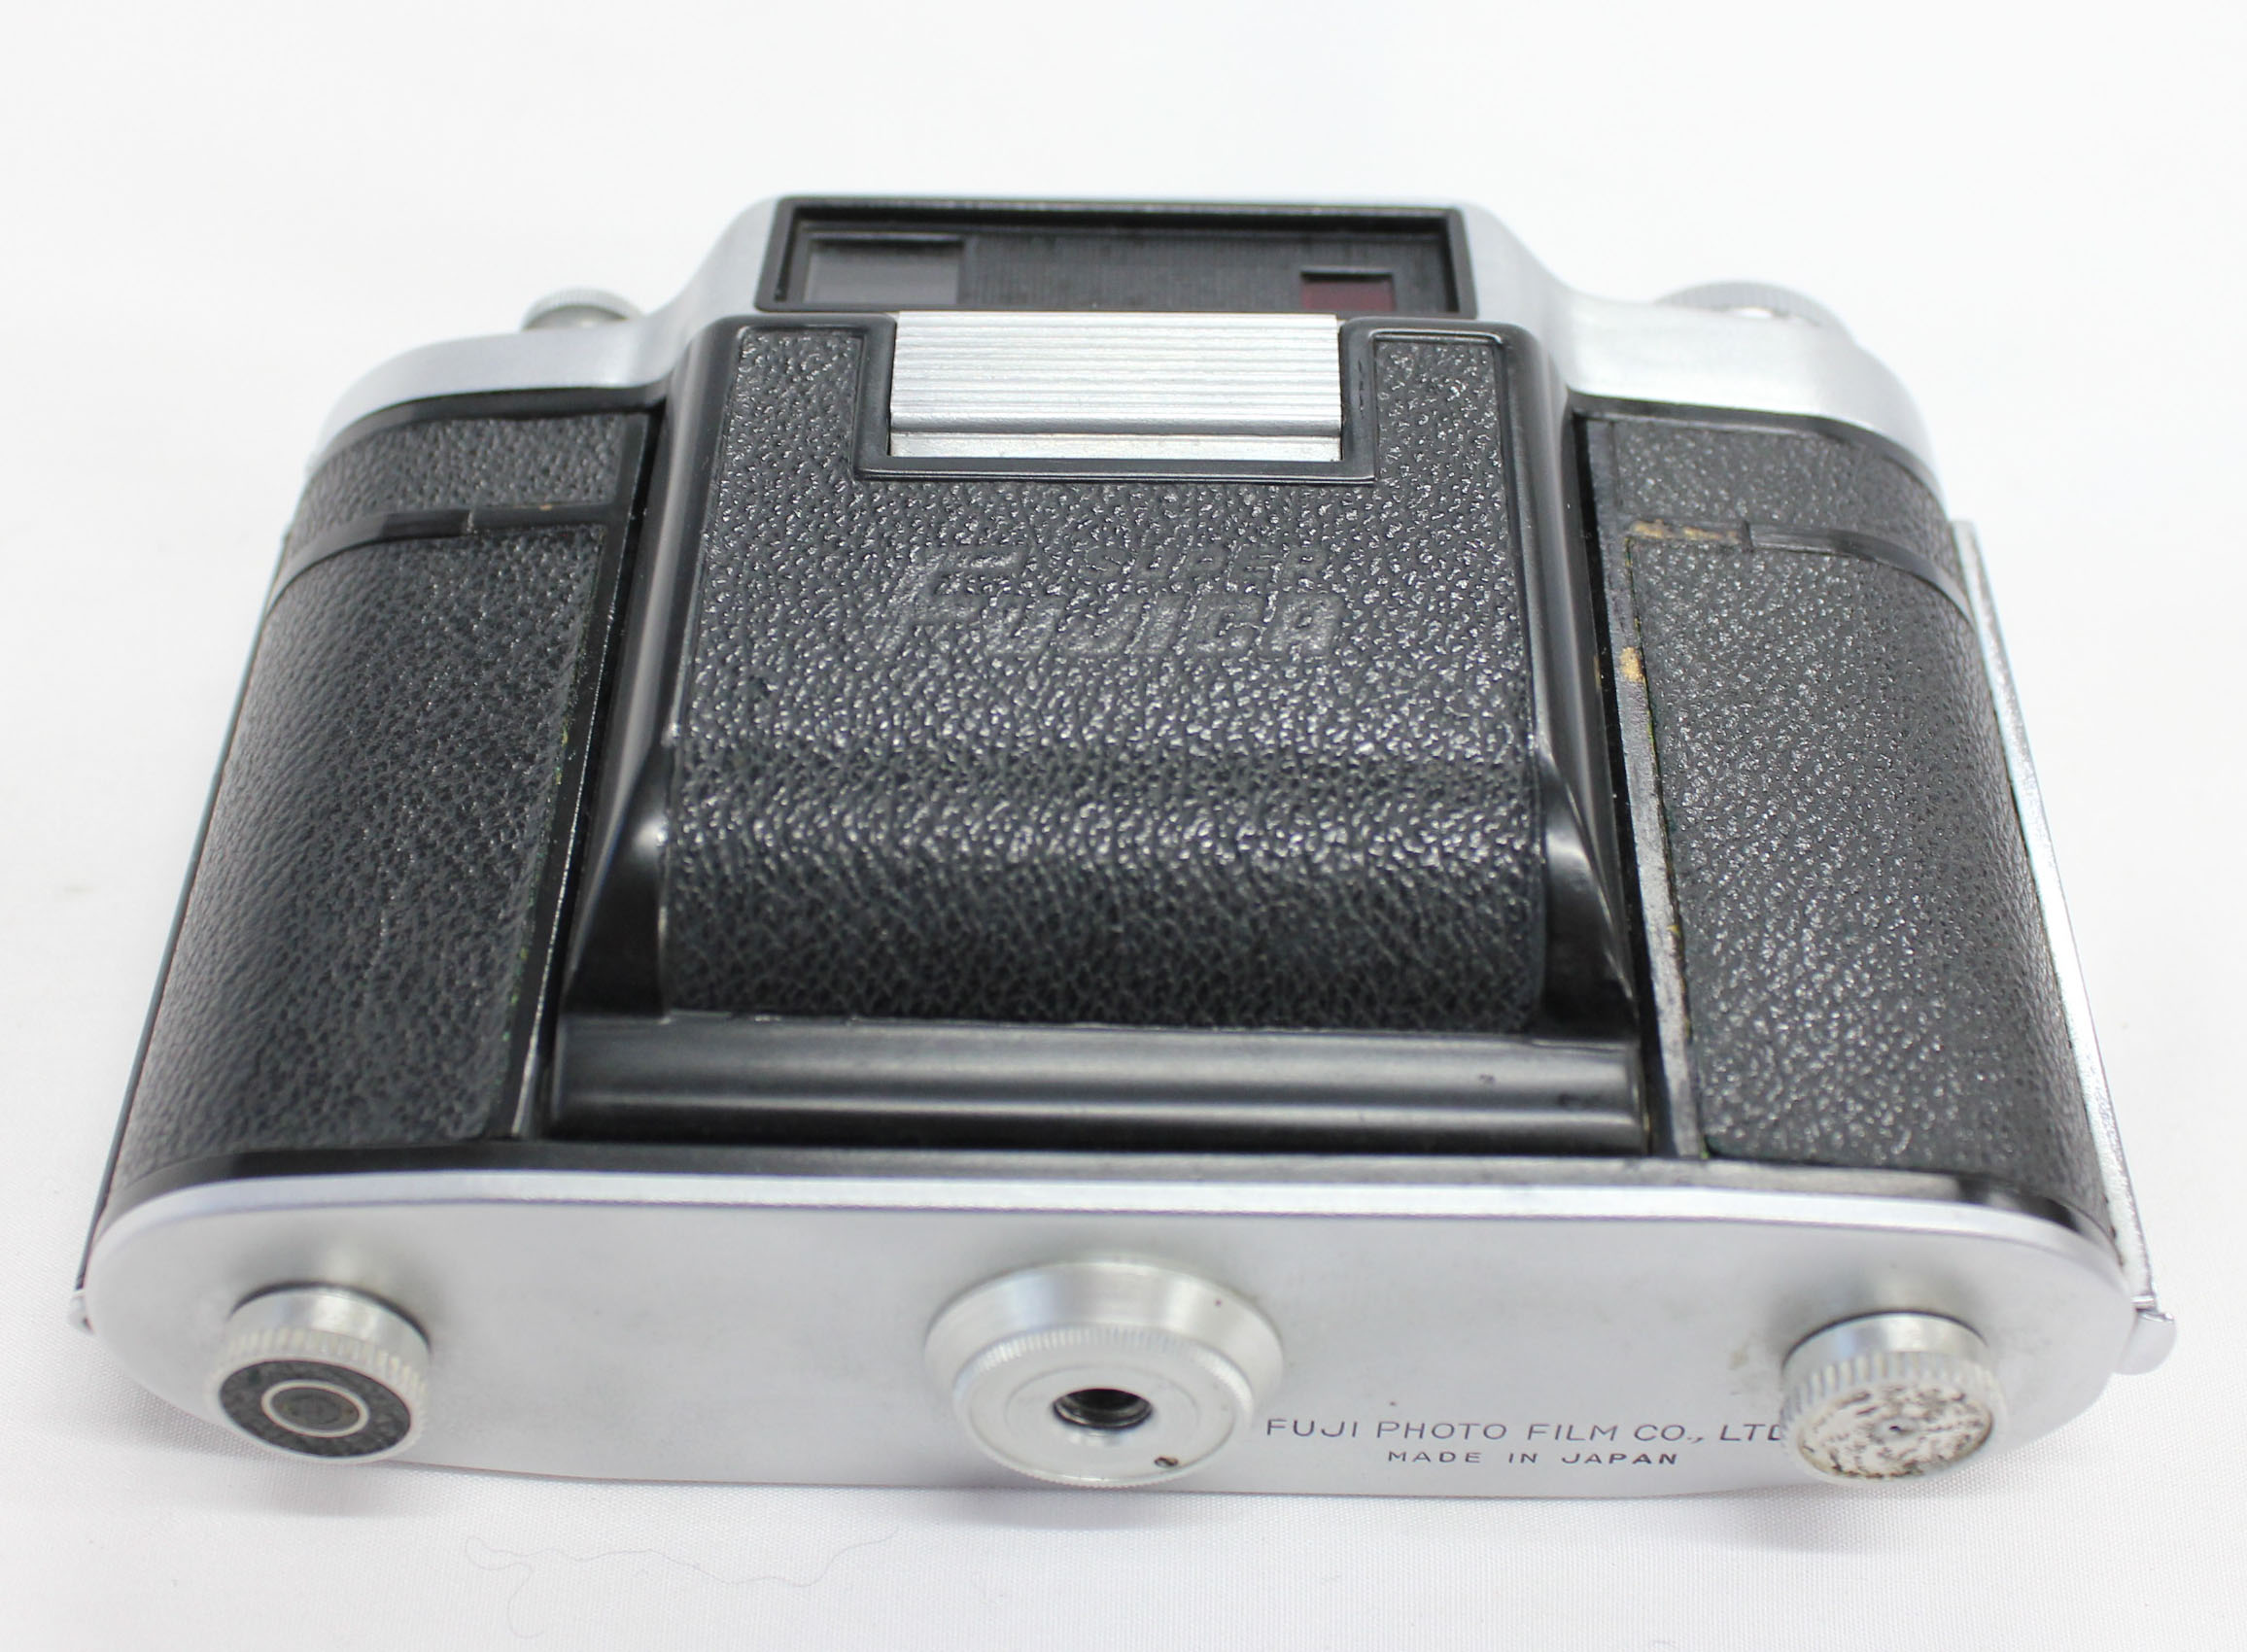 Fuji Super Fujica-6 Six 6x6 Medium Format Film Camera with Fujinar 75mm F/3.5 from Japan Photo 12